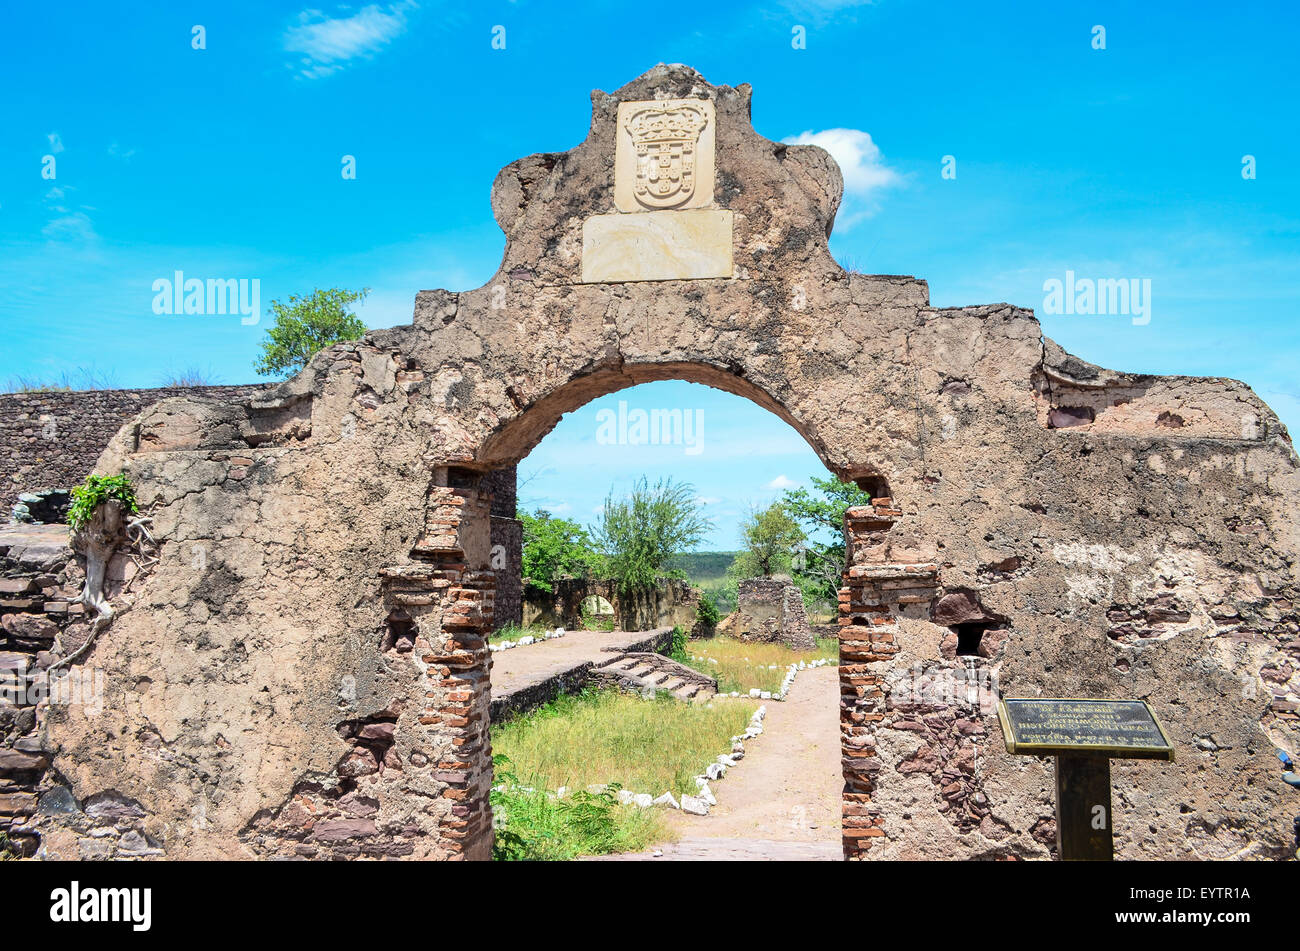 Ruines de la forteresse de Cambambe/Kambambe, une forteresse historique construite par les Portugais, dans la province de Cuanza Norte, Angola Banque D'Images